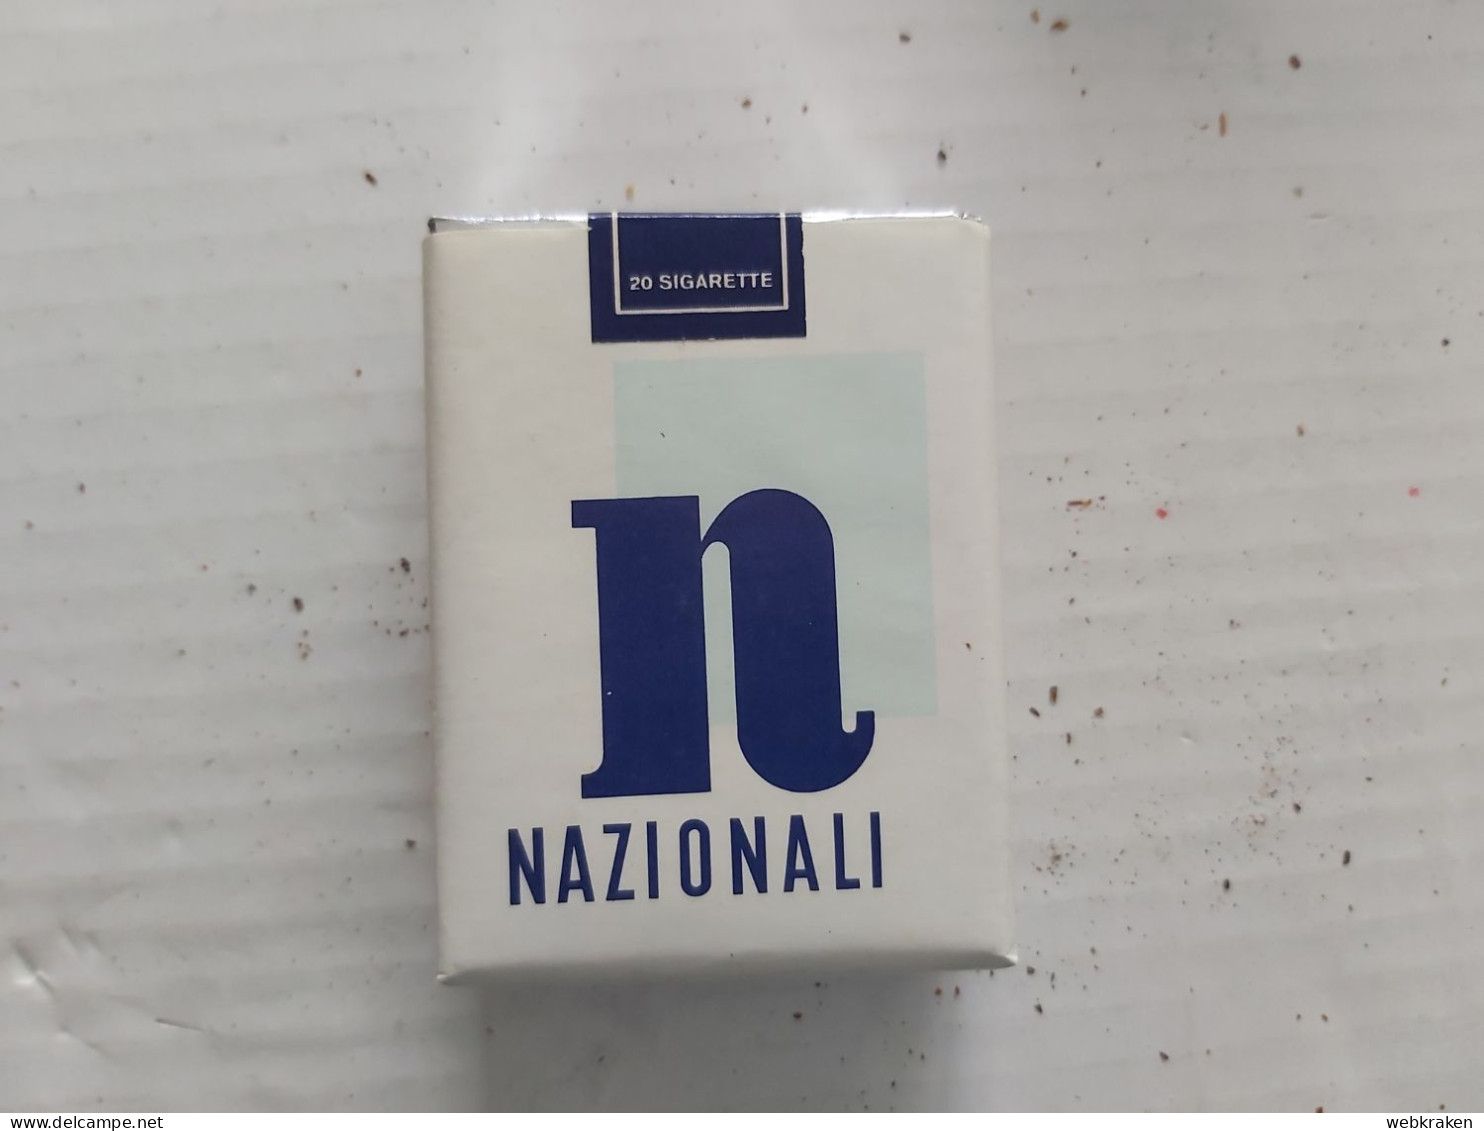 PACCHETTO SIGARETTE PIENO TABACCO FUMO TABACS WITH ORIGINAL CIGARETTES TOBACCO MARCA NAZIONALI CON SIGARETTE - Cigarette Holders